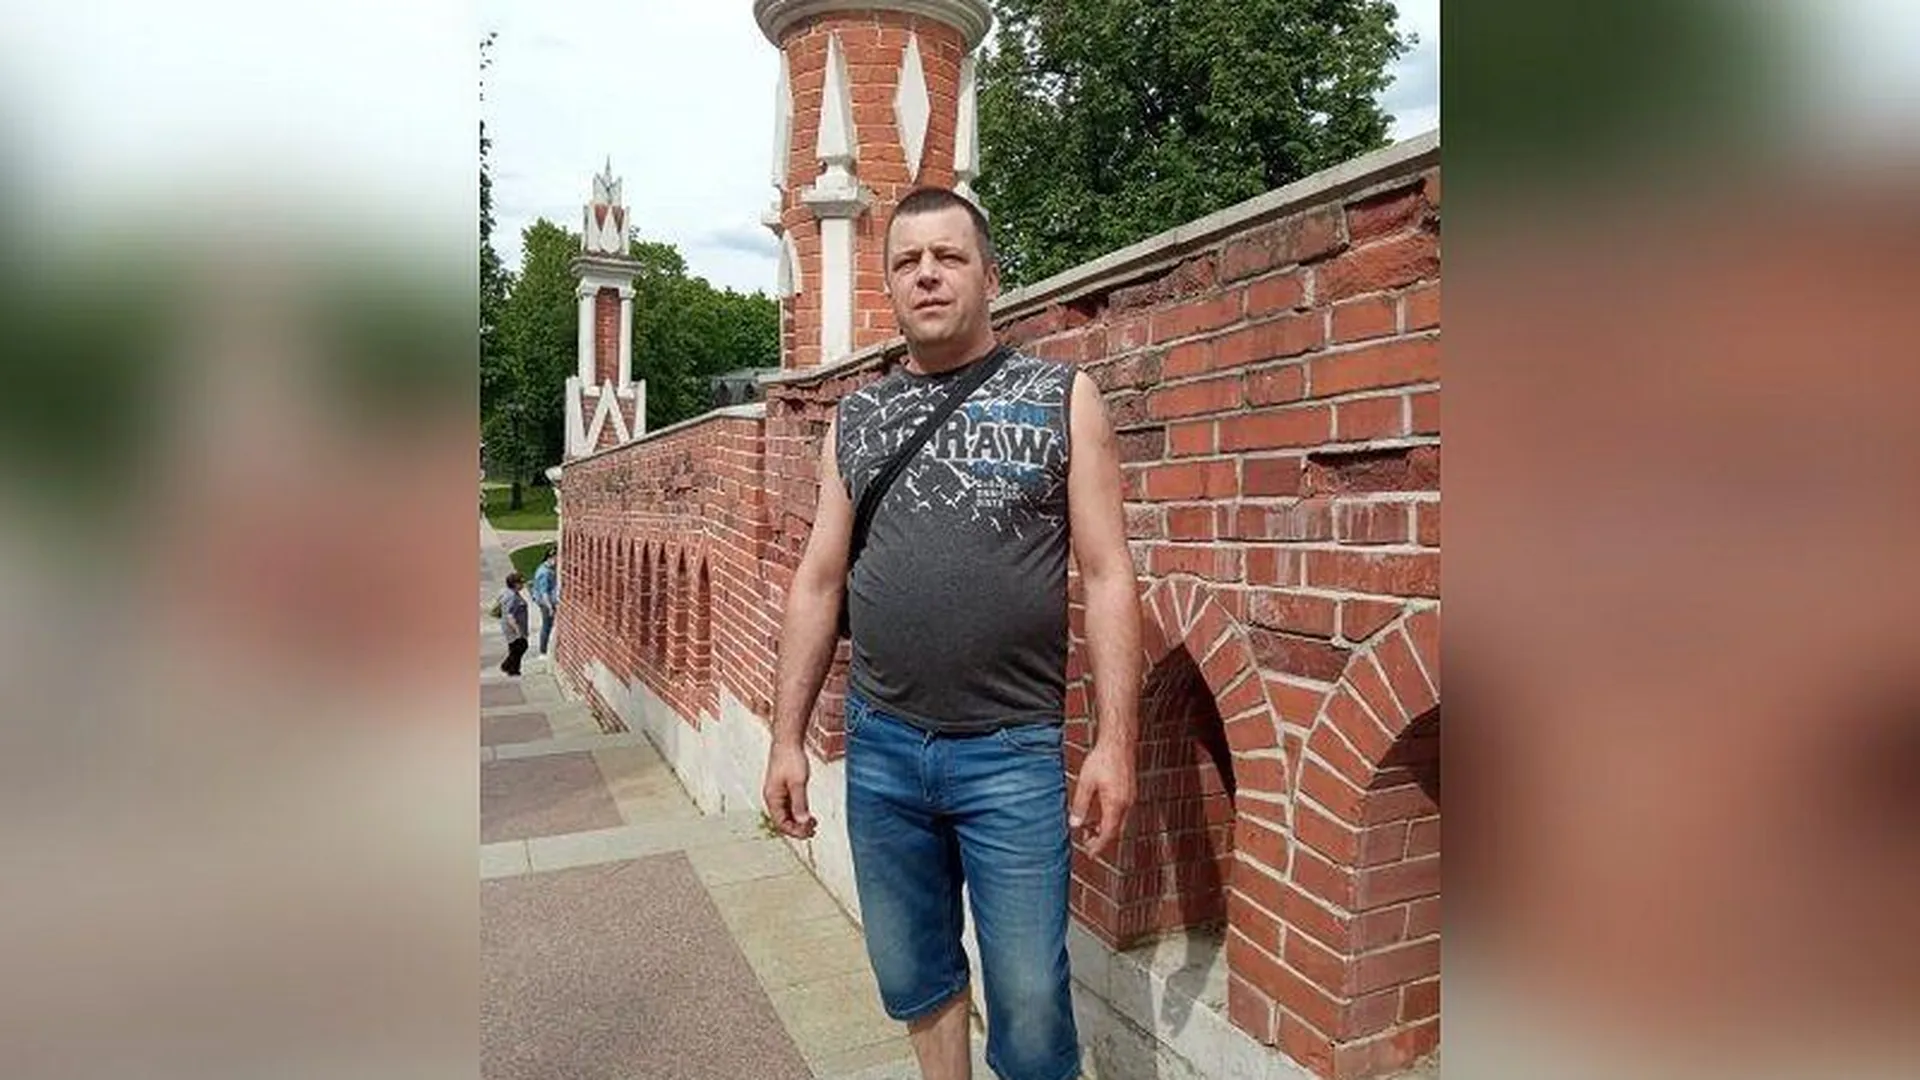 Мужчина из Подмосковья, которого приняли за стрелка из МФЦ в столице, просит оставить его в покое